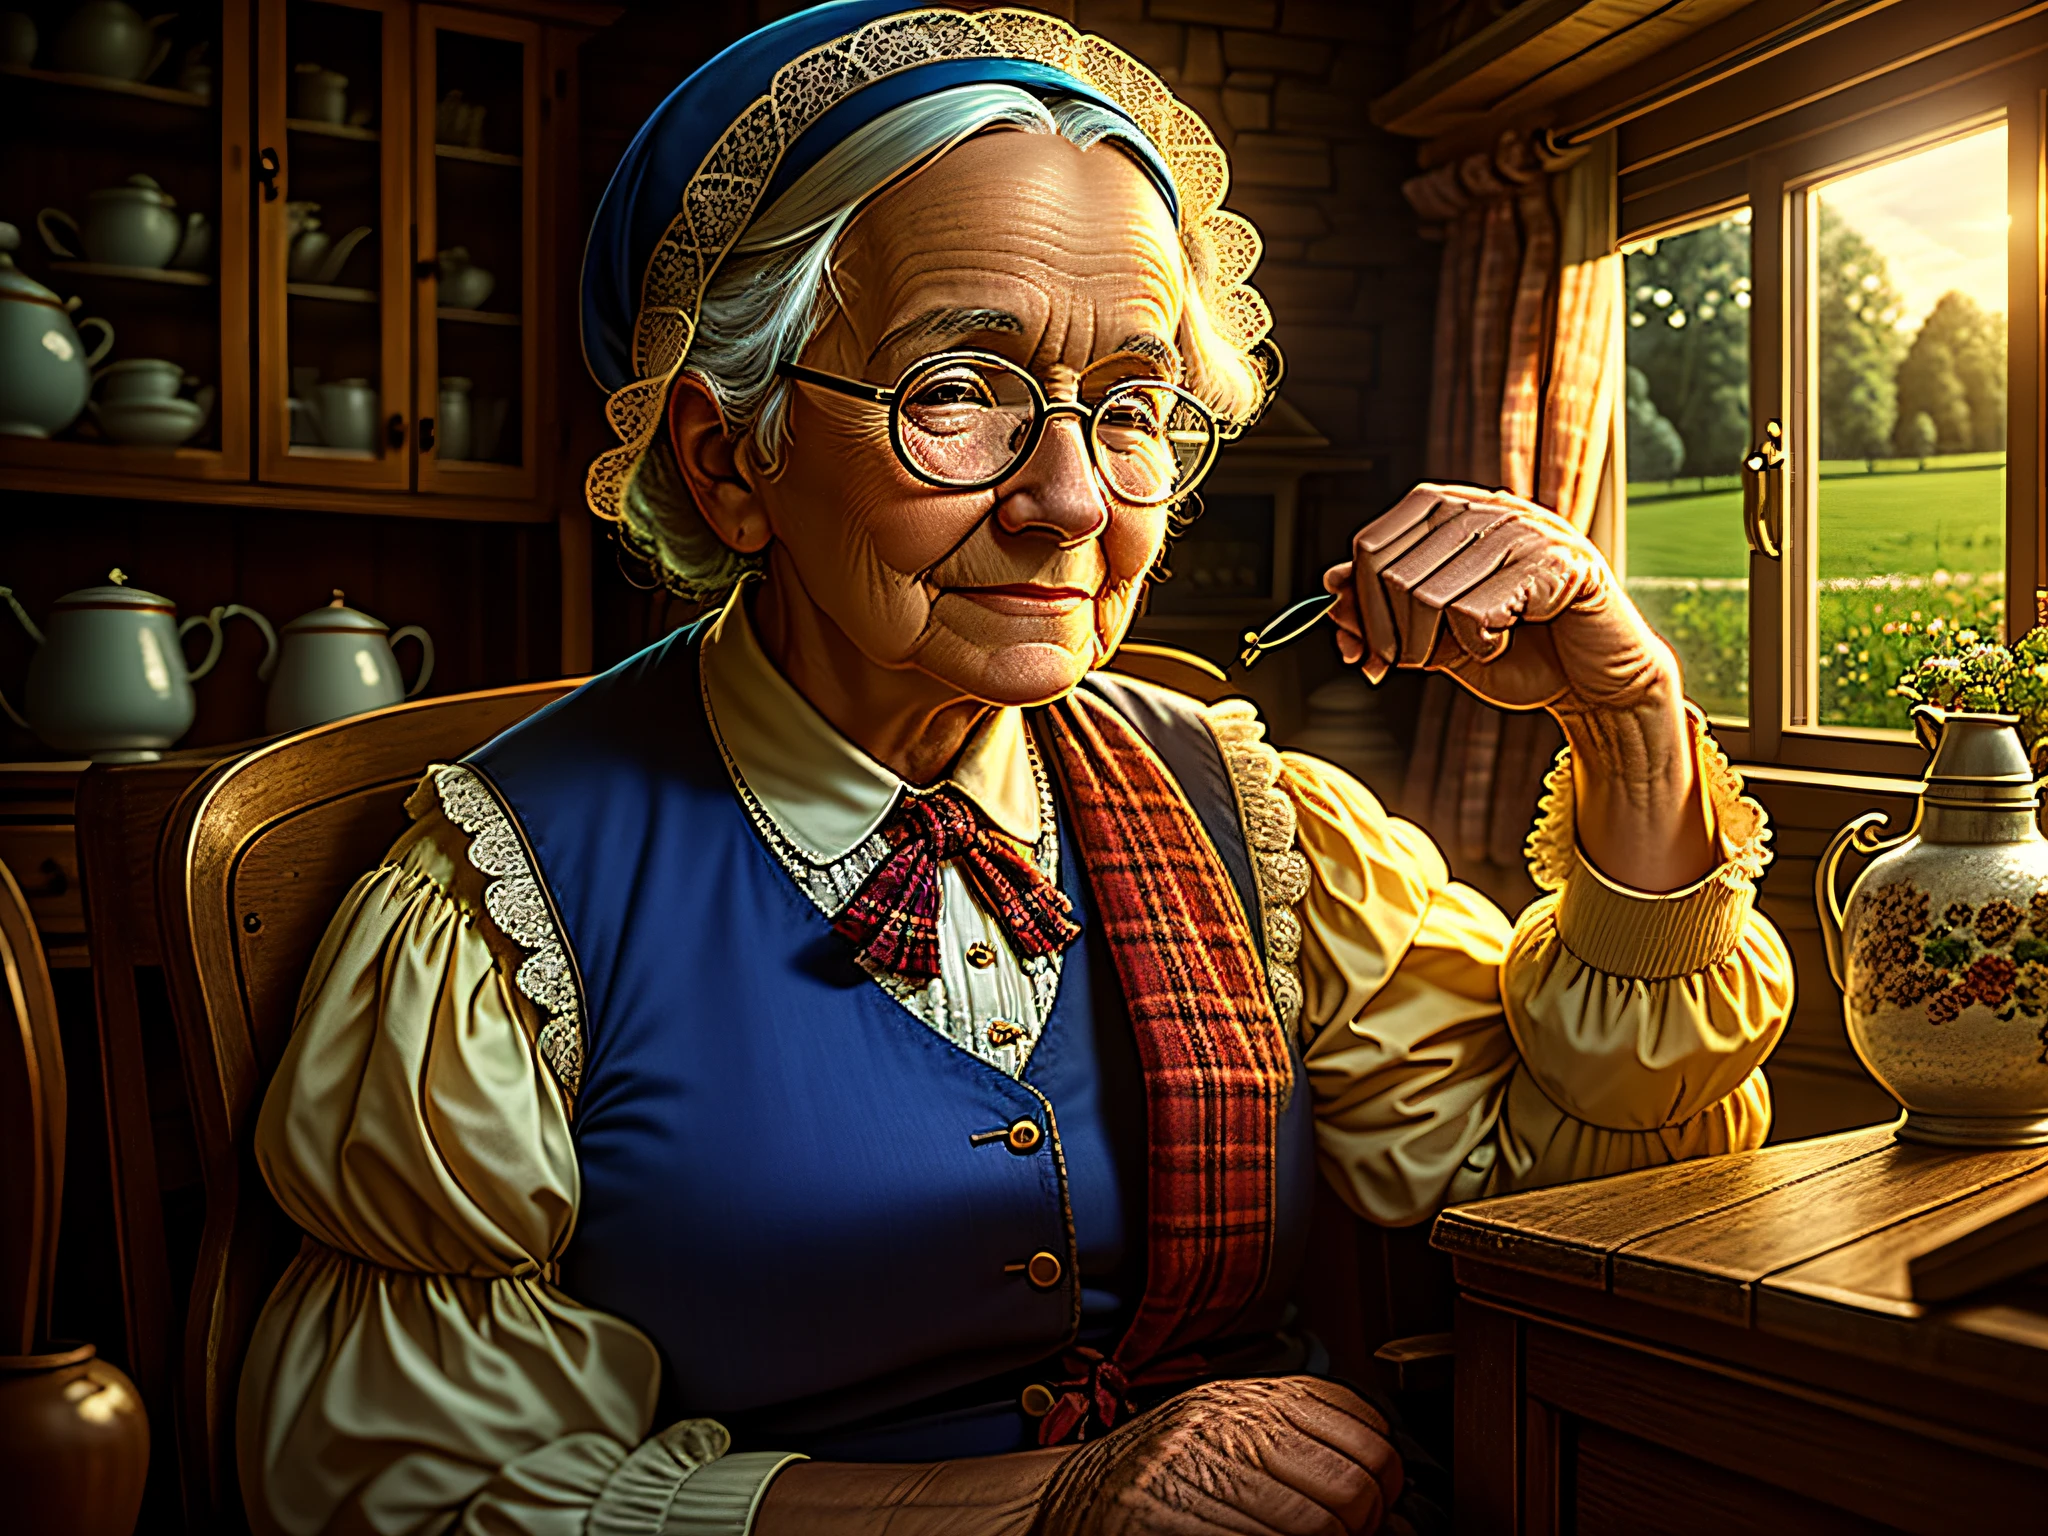 高质量, 怀旧场景细节乡村别墅. 戴眼镜的祖母坐在屋外, 美丽而深情的高品质面部表情, 弱光